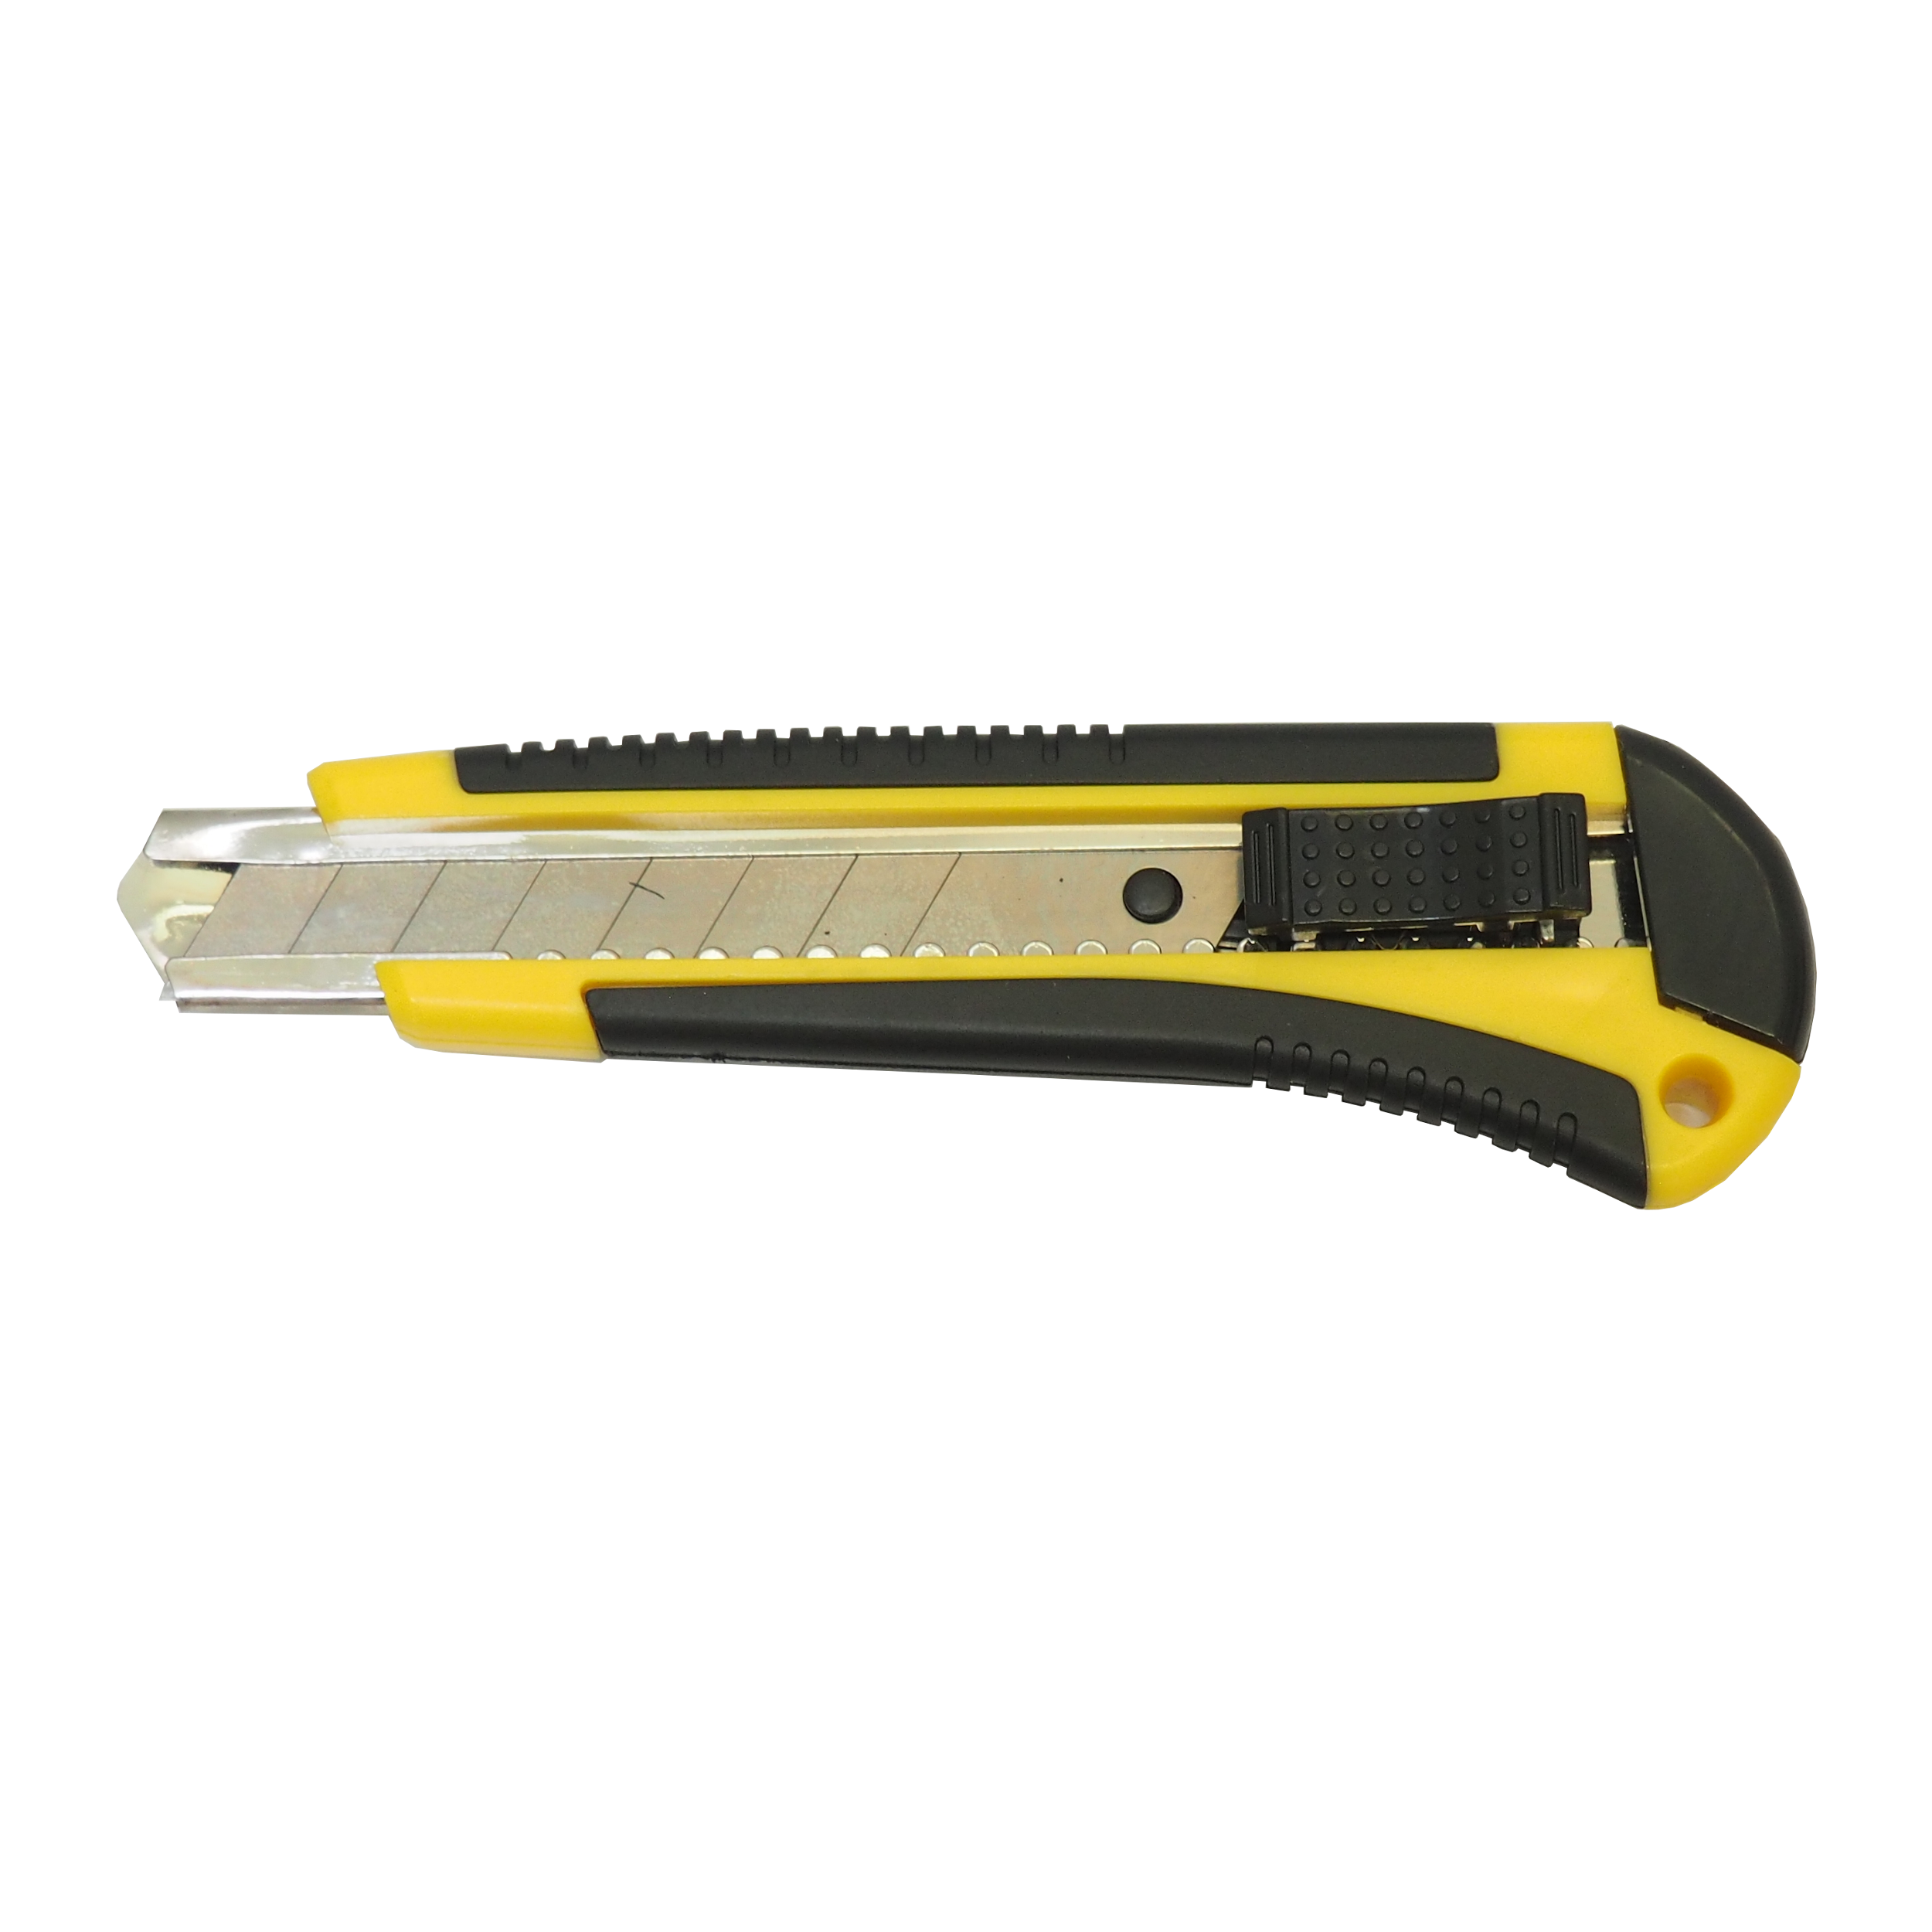 TOPTRADE nůž odlamovací, plastový,  s kovovou výztuhou, 18 mm, P-21 0.09 Kg TOP Sklad4 200211 1343